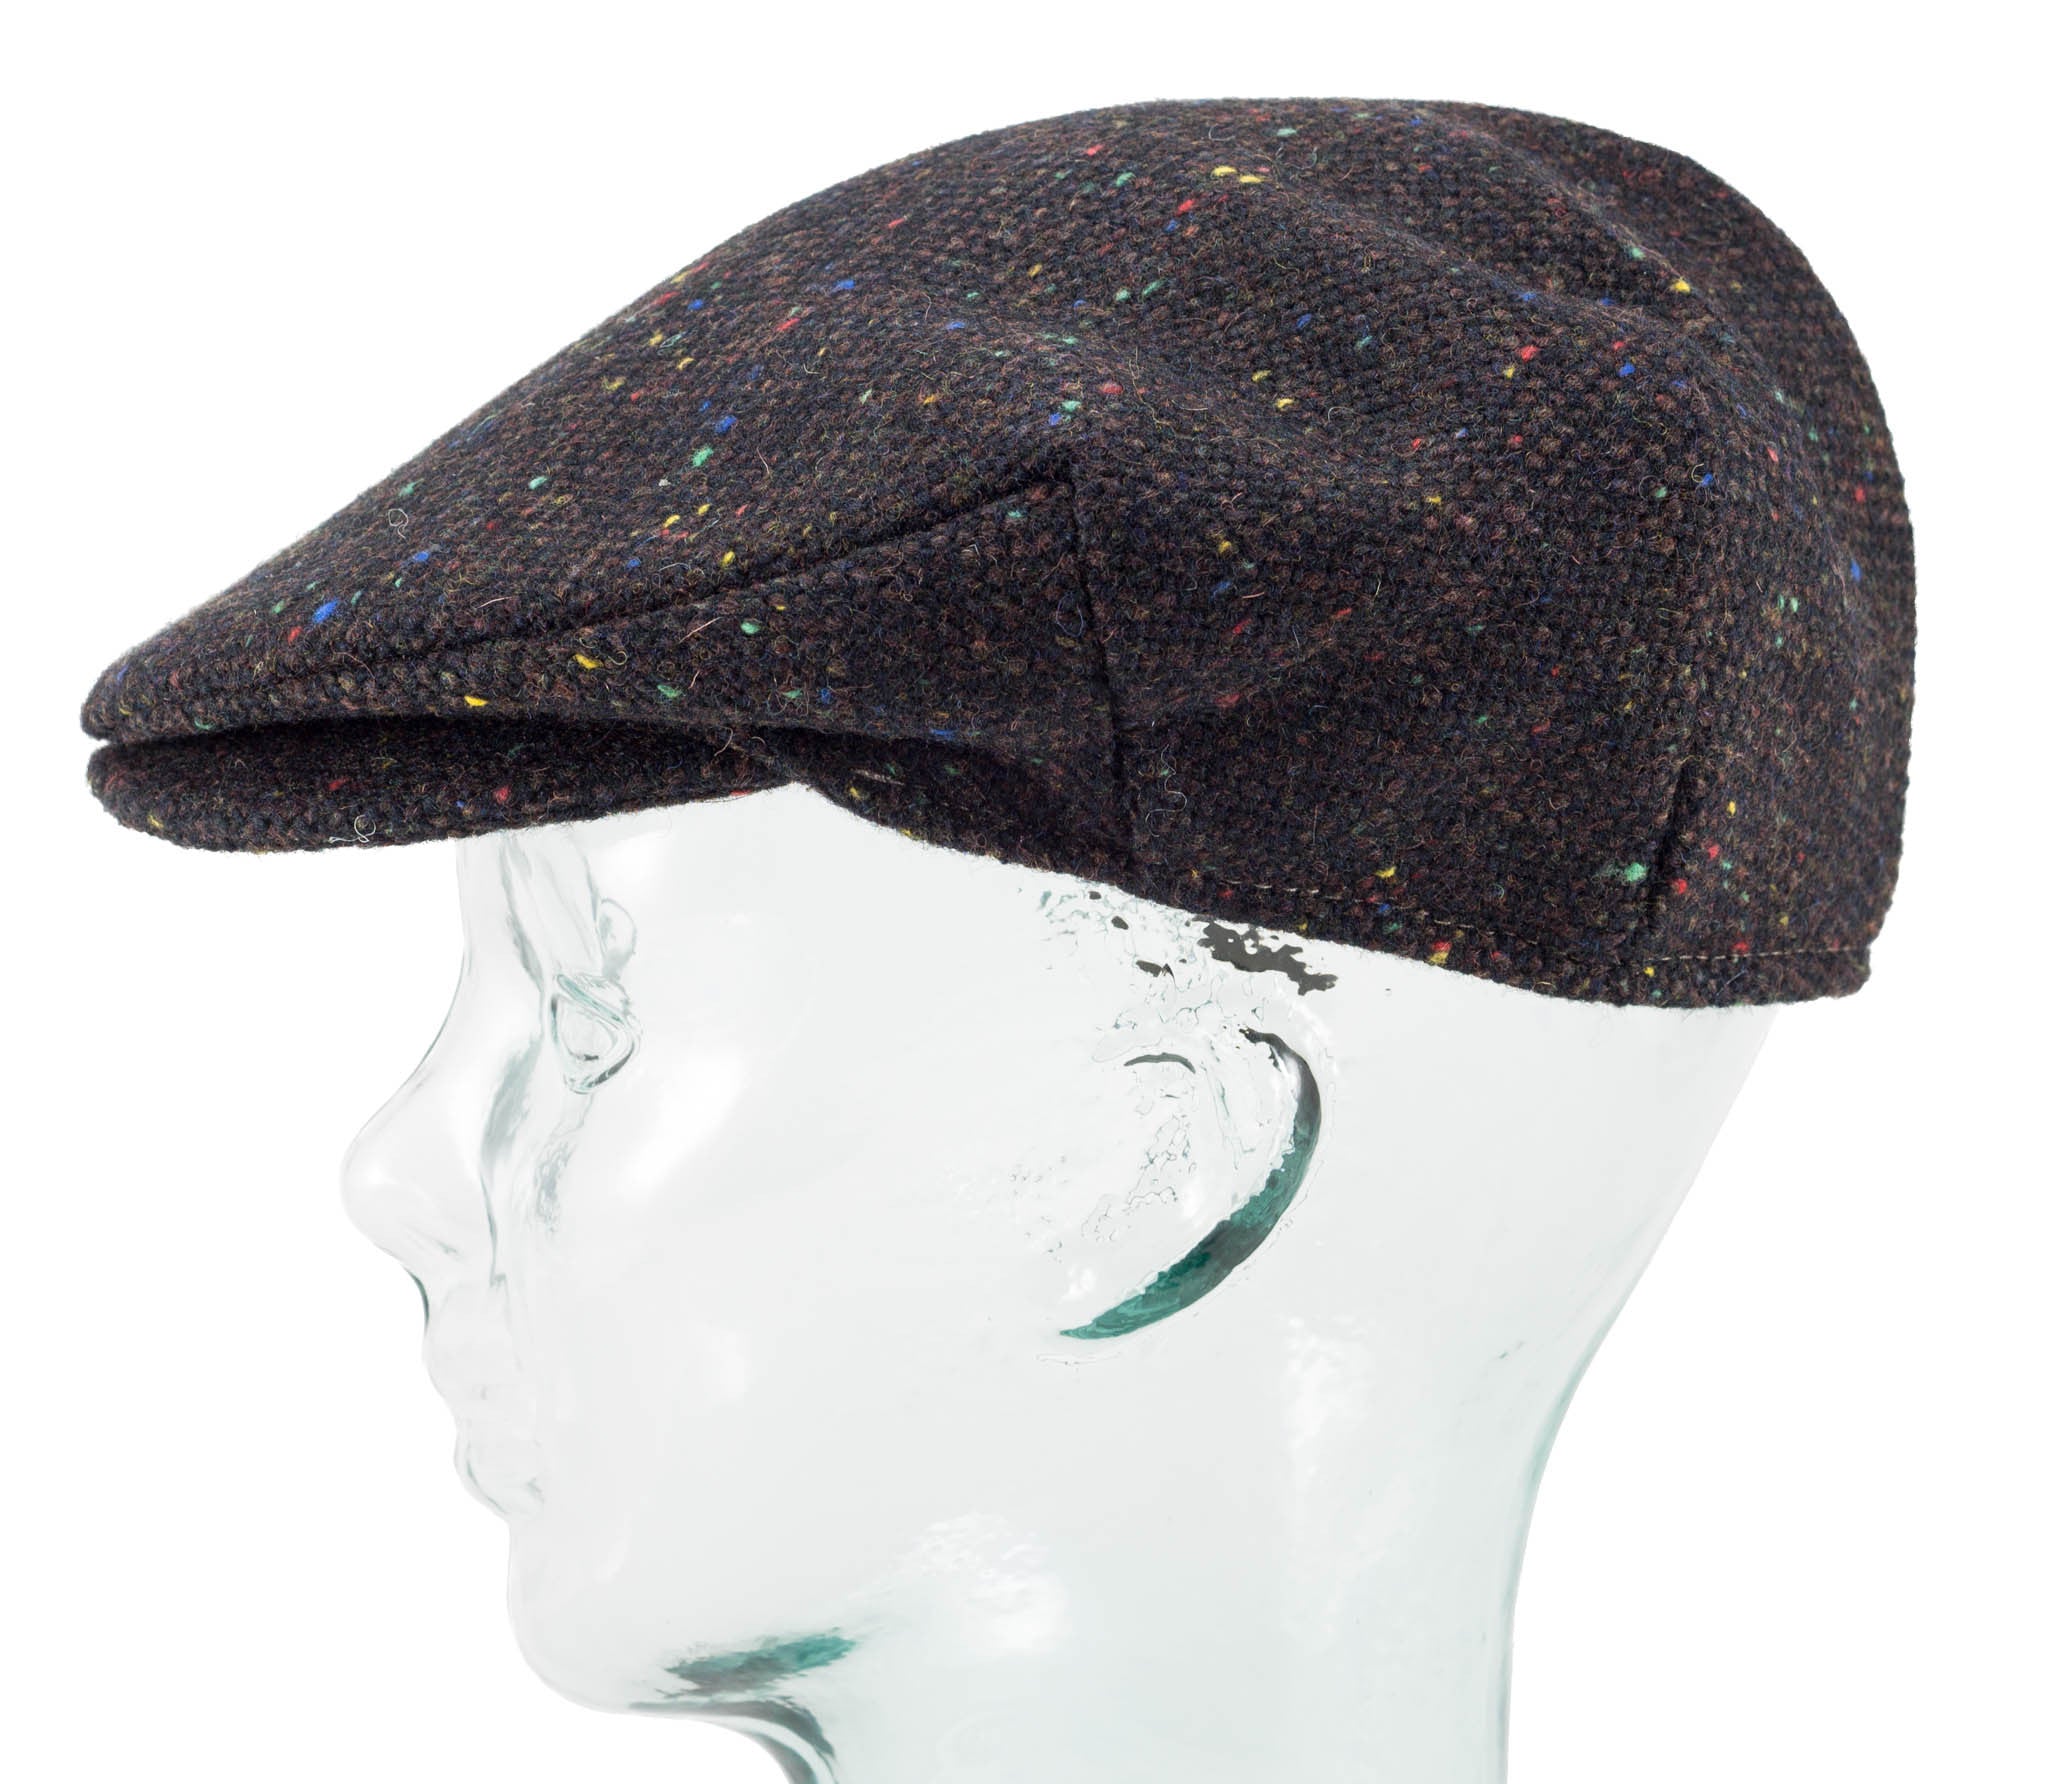 Donegal Tweed - Vintage Style Cap